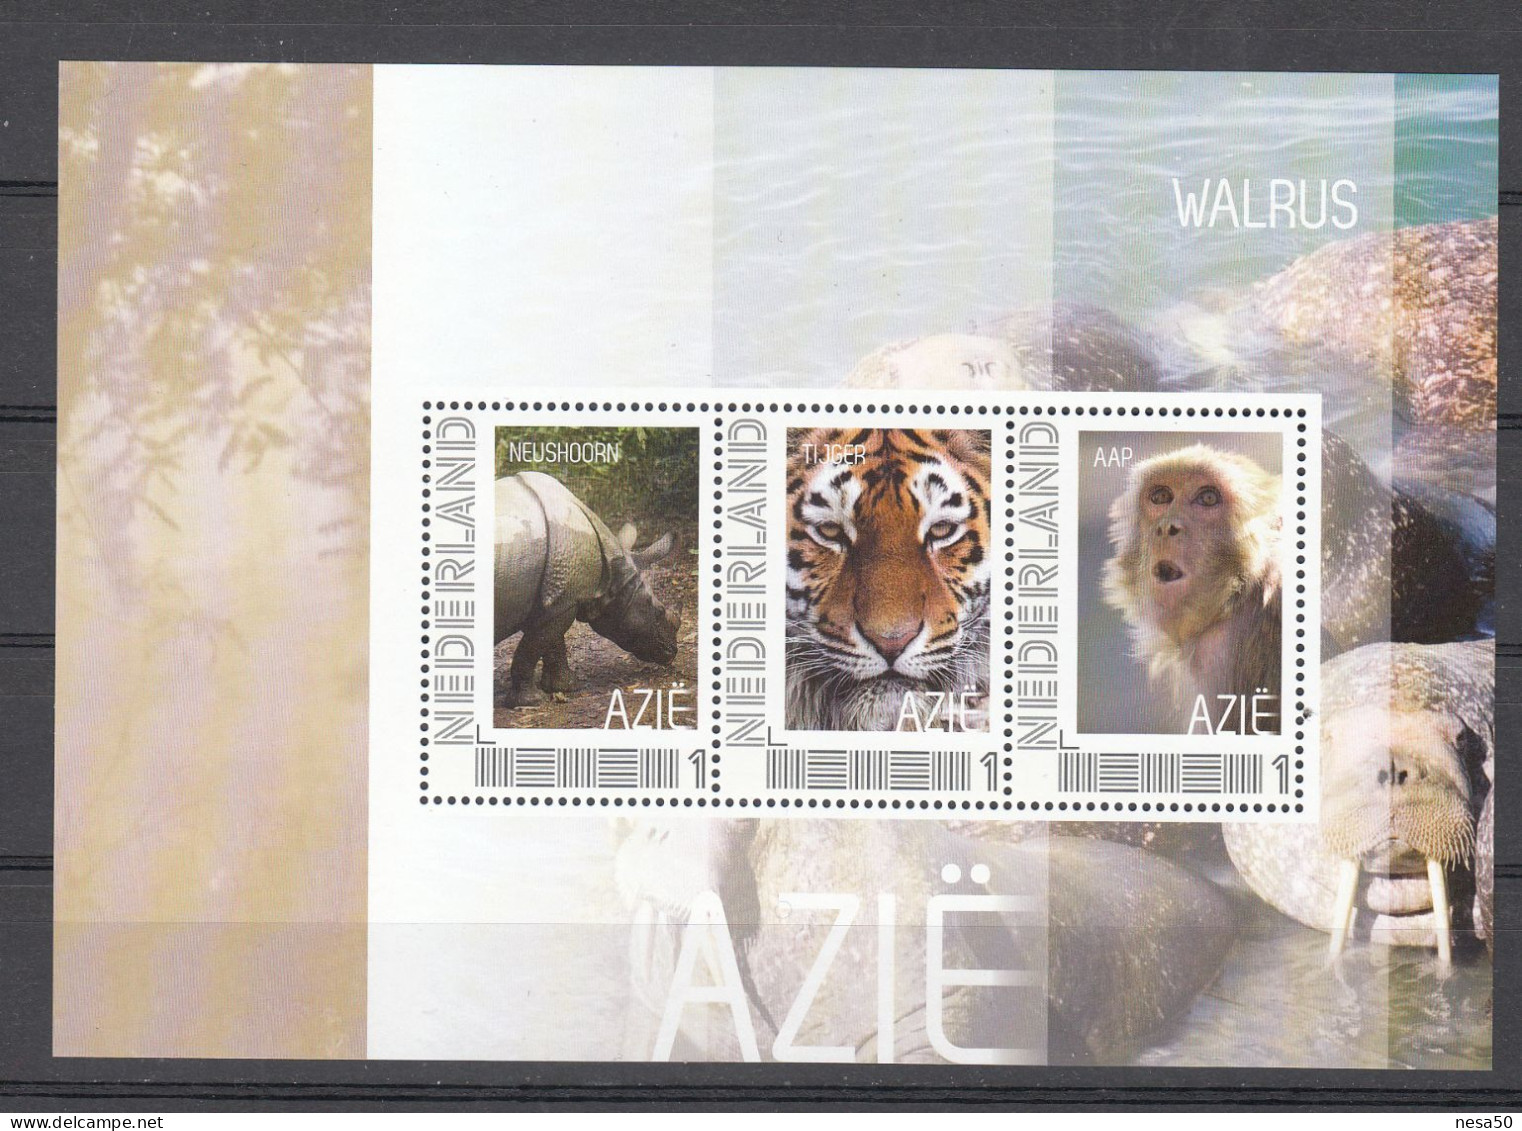 Nederland Persoonlijke Zegel: Azie: Neushoorn, Tijger, Aap, Rhino, Tiger, Monkey, - Unused Stamps